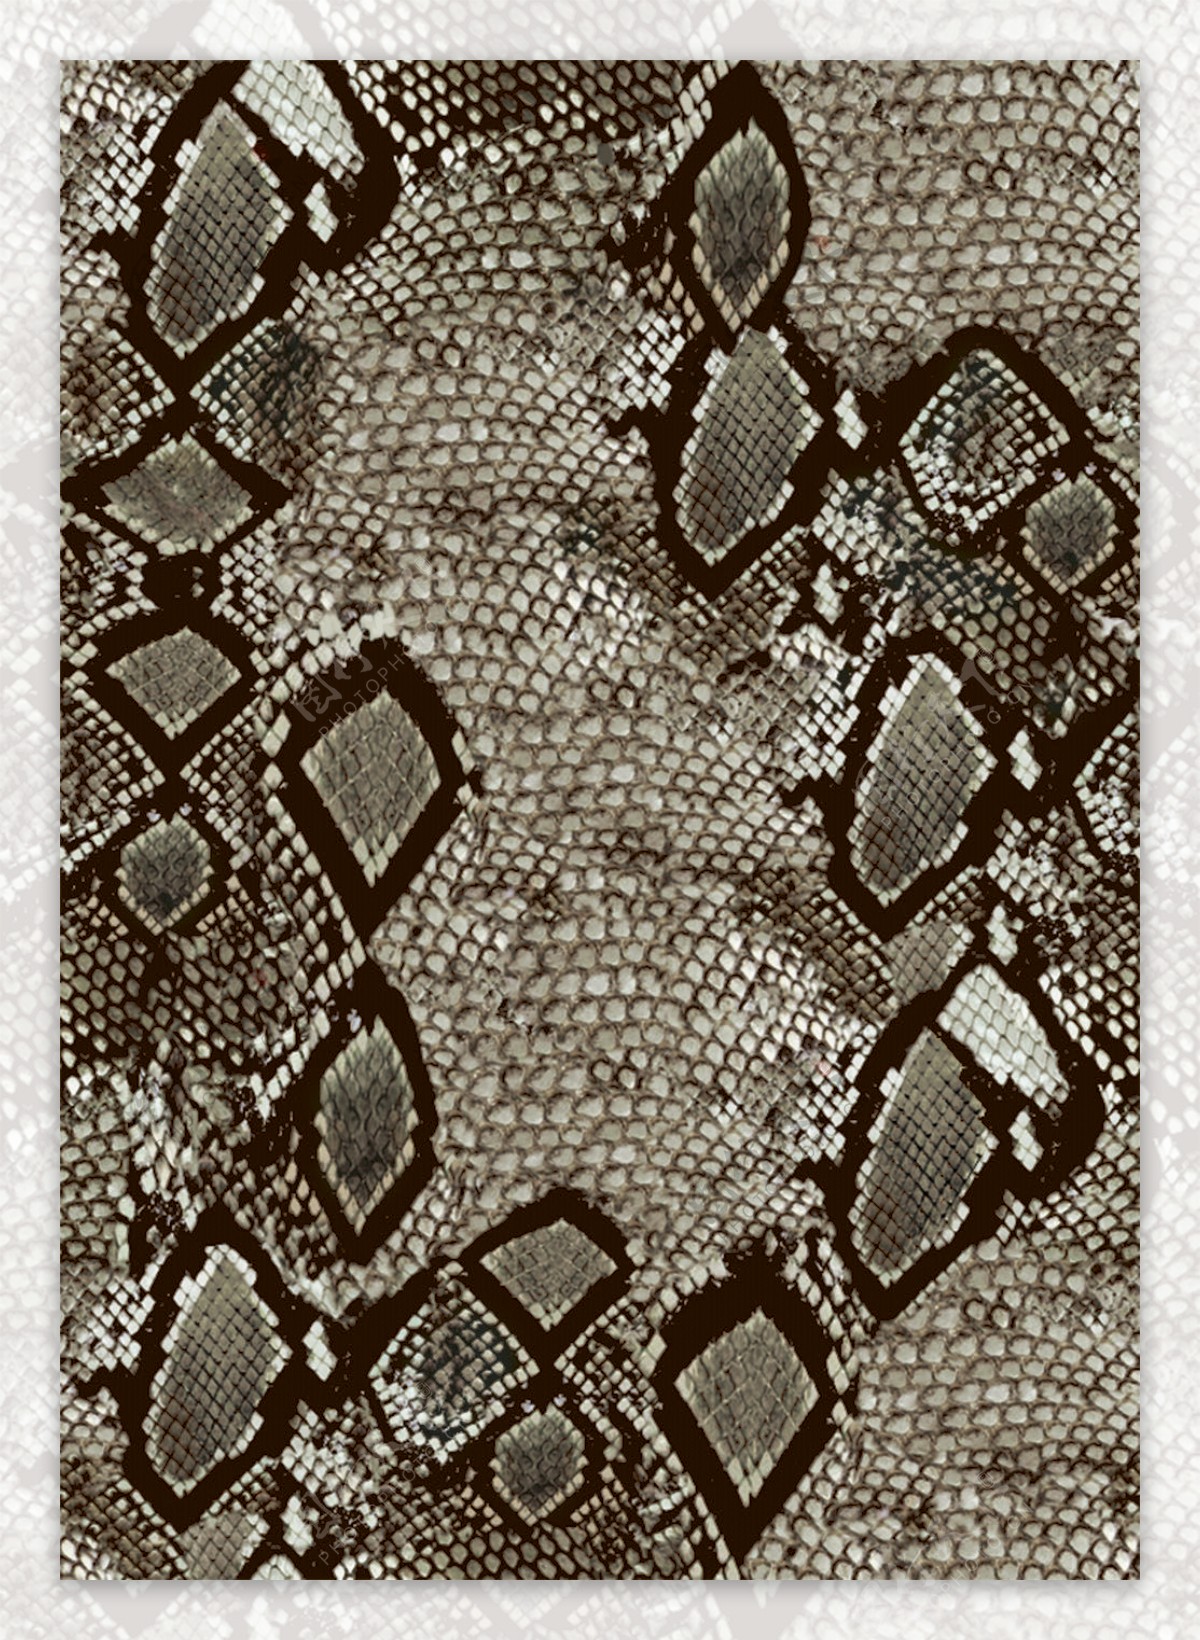 蛇皮纹鳄鱼纹抽象